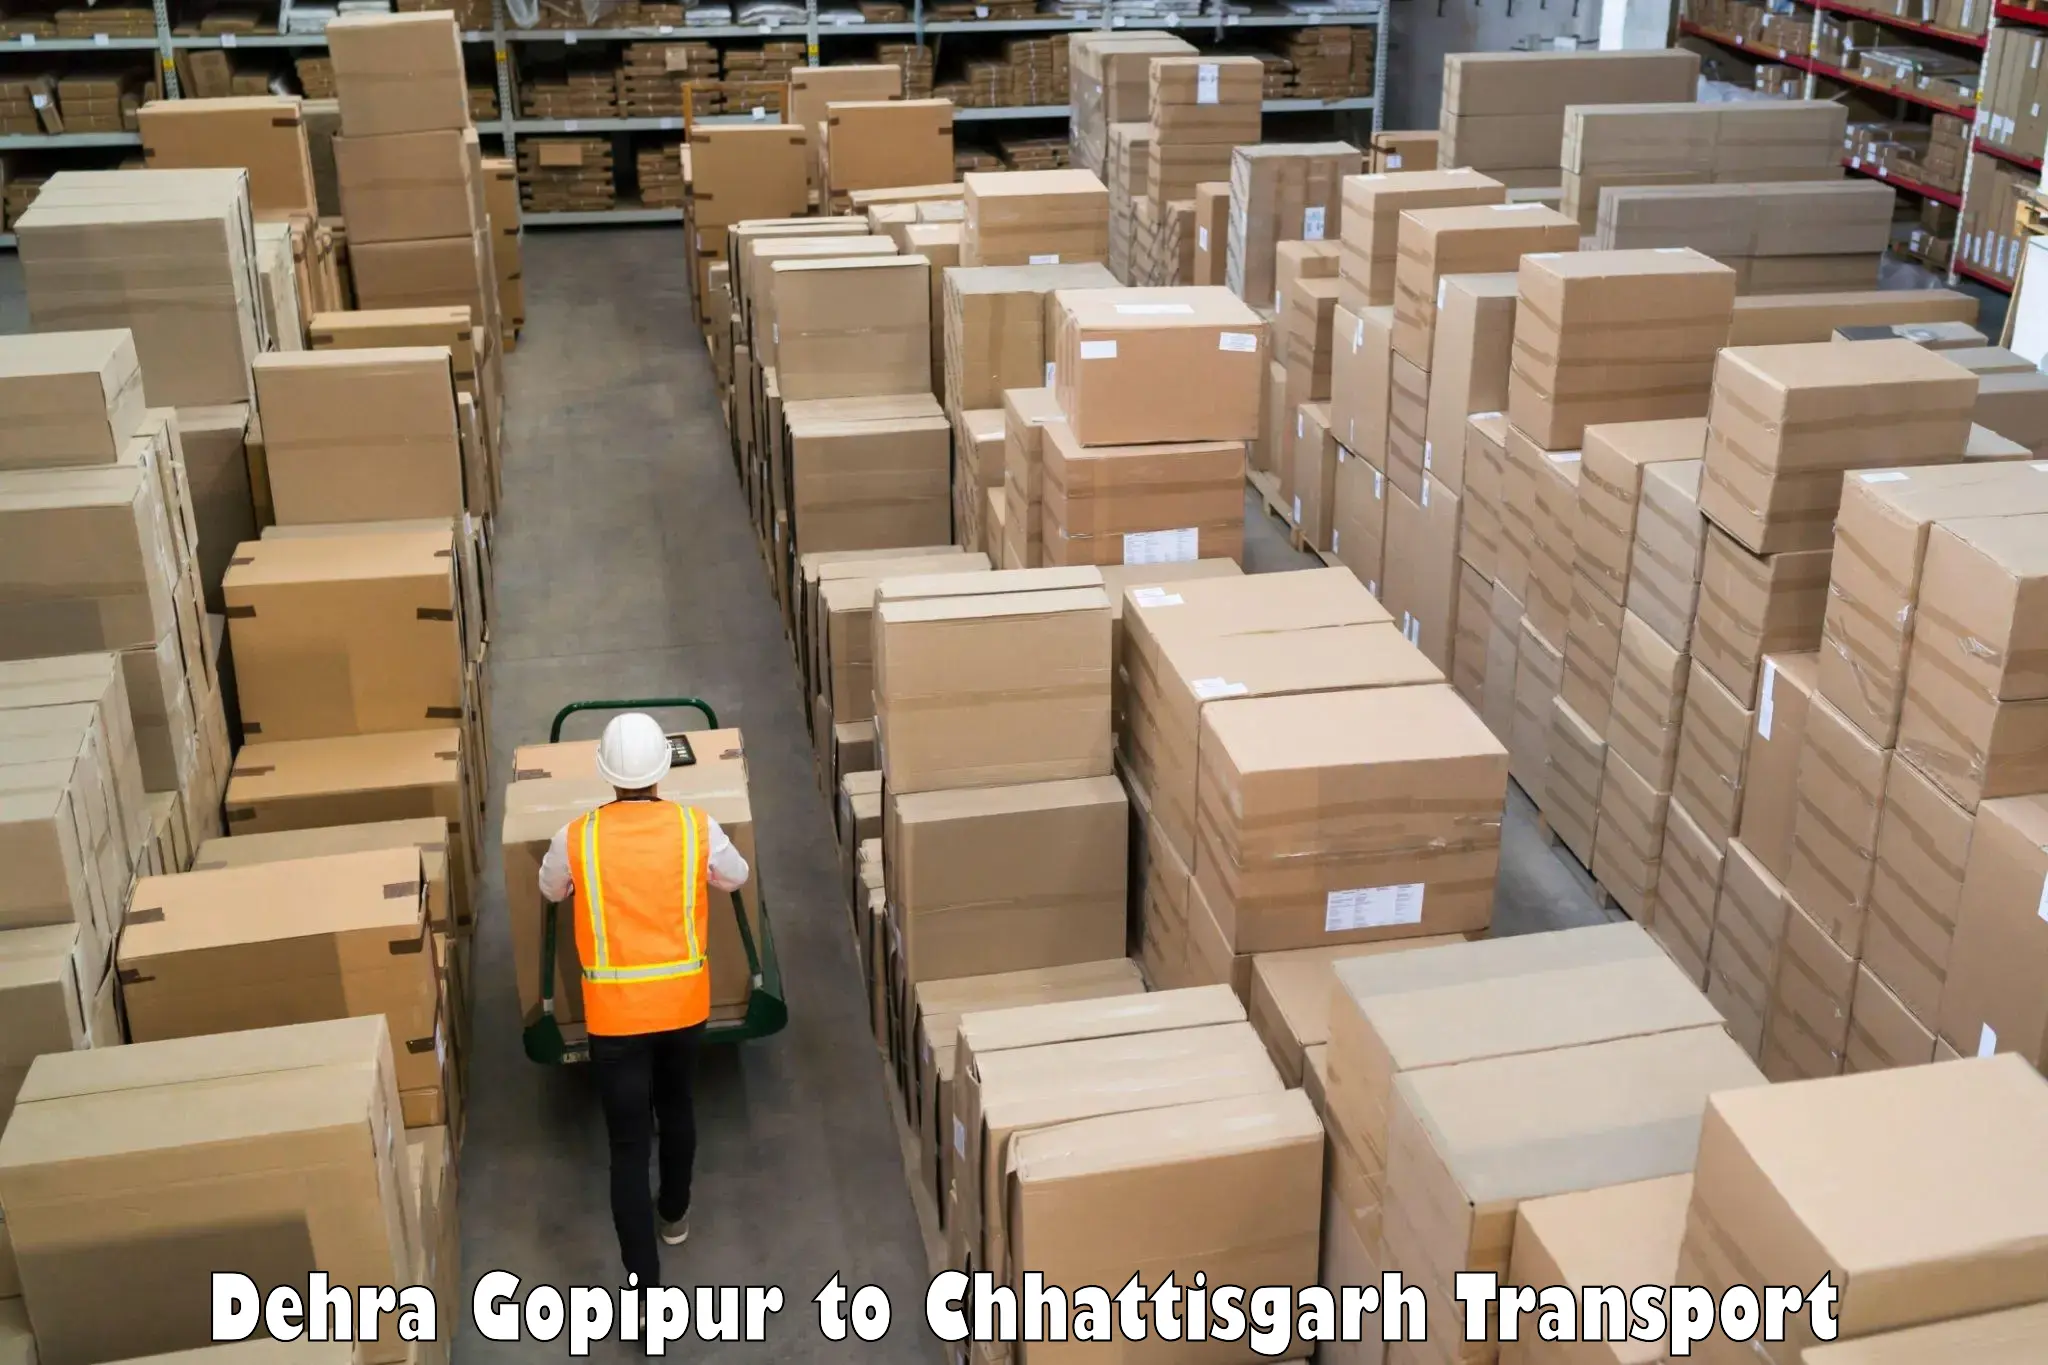 Nationwide transport services Dehra Gopipur to Raigarh Chhattisgarh